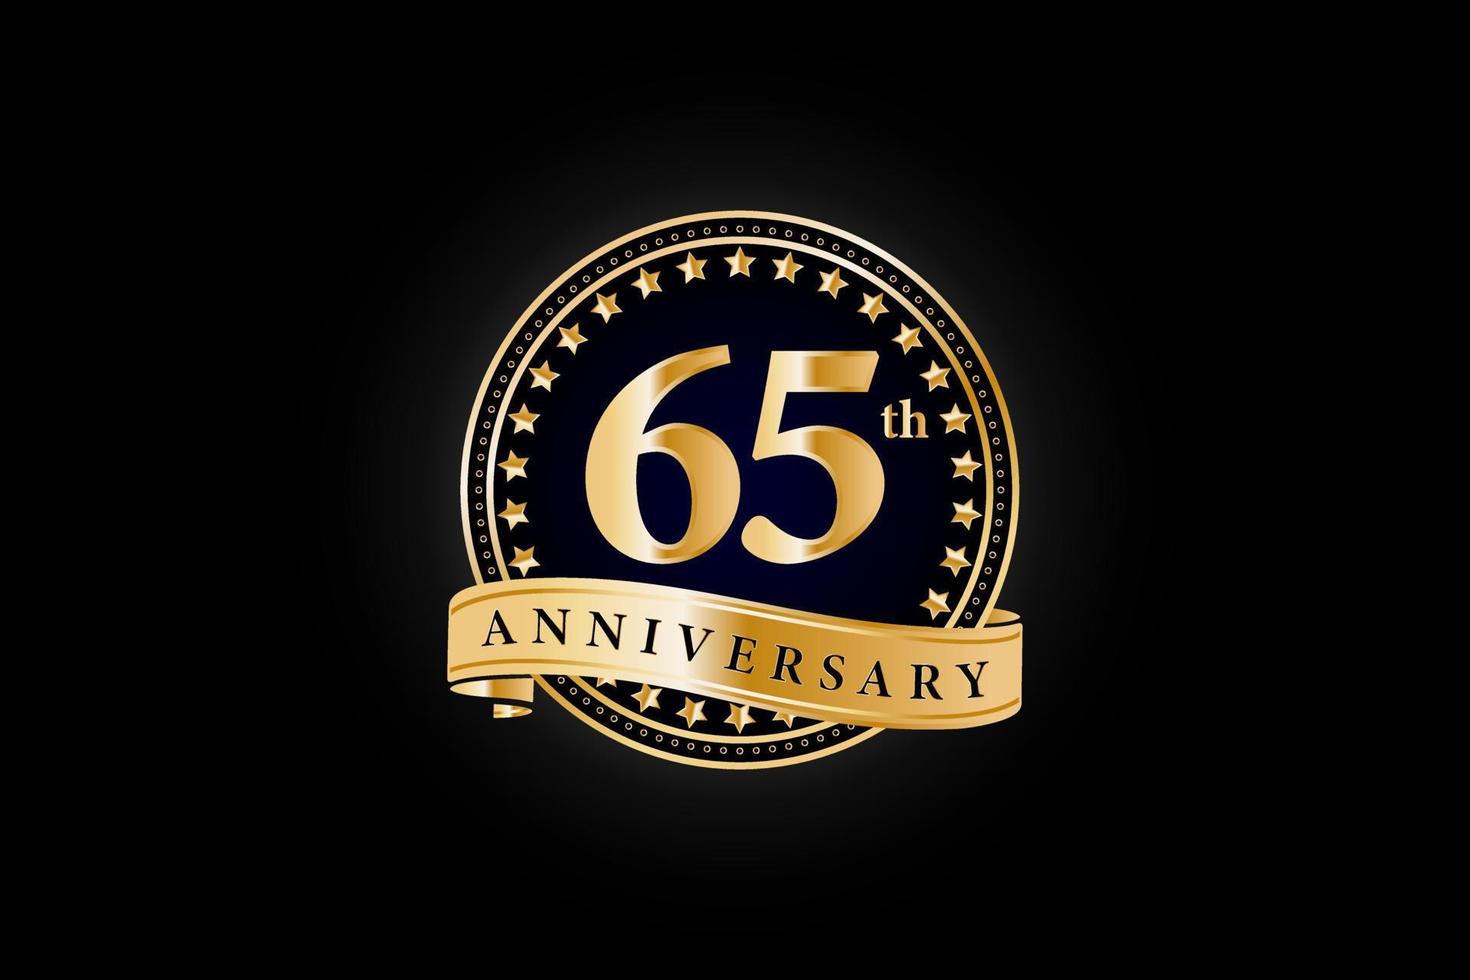 65:e årsdag gyllene guld logotyp med ringa och guld band isolerat på svart bakgrund, vektor design för firande.